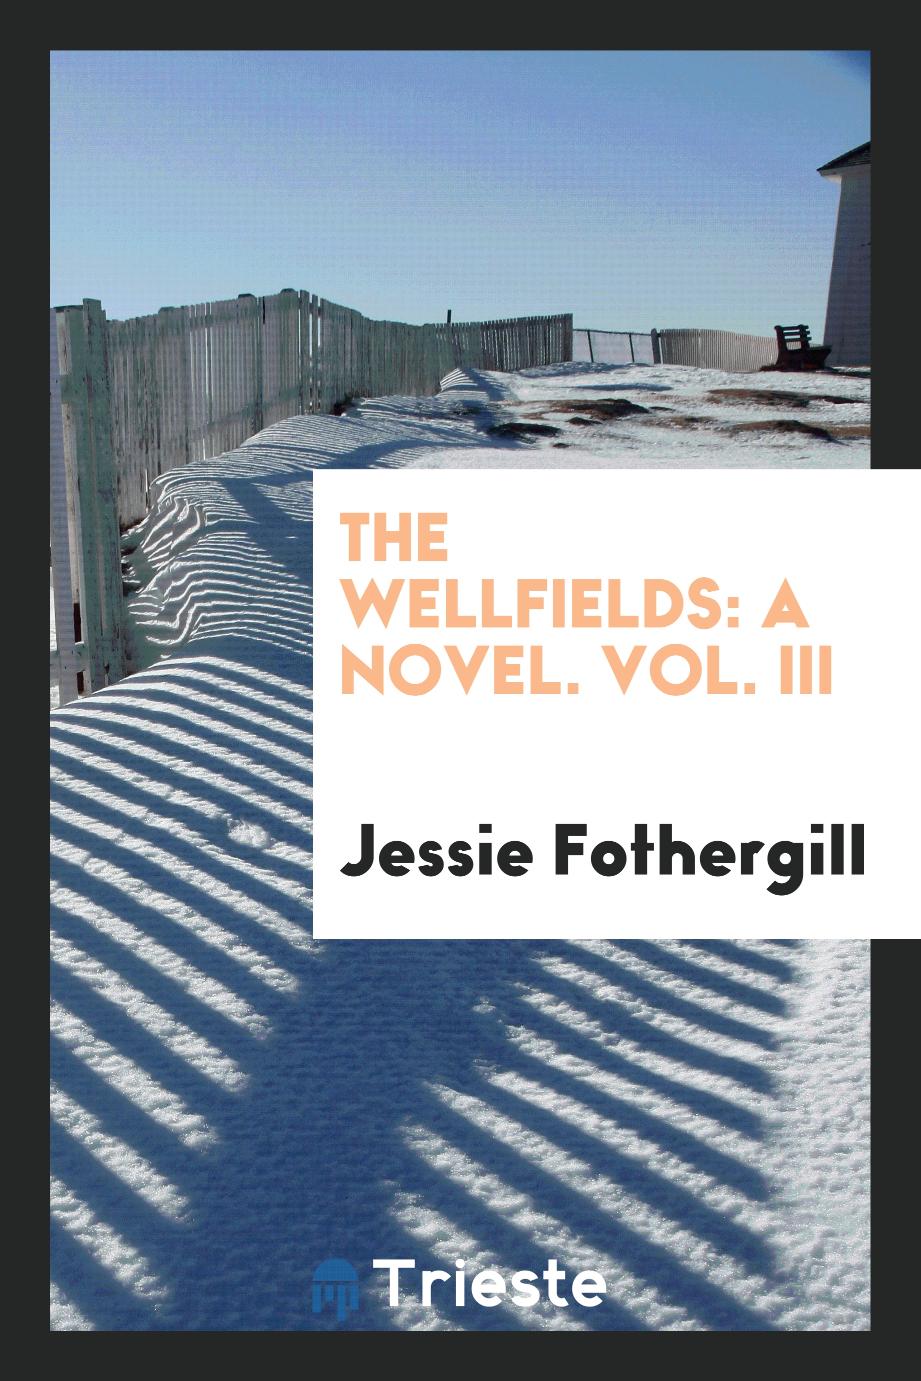 The Wellfields: A Novel. Vol. III